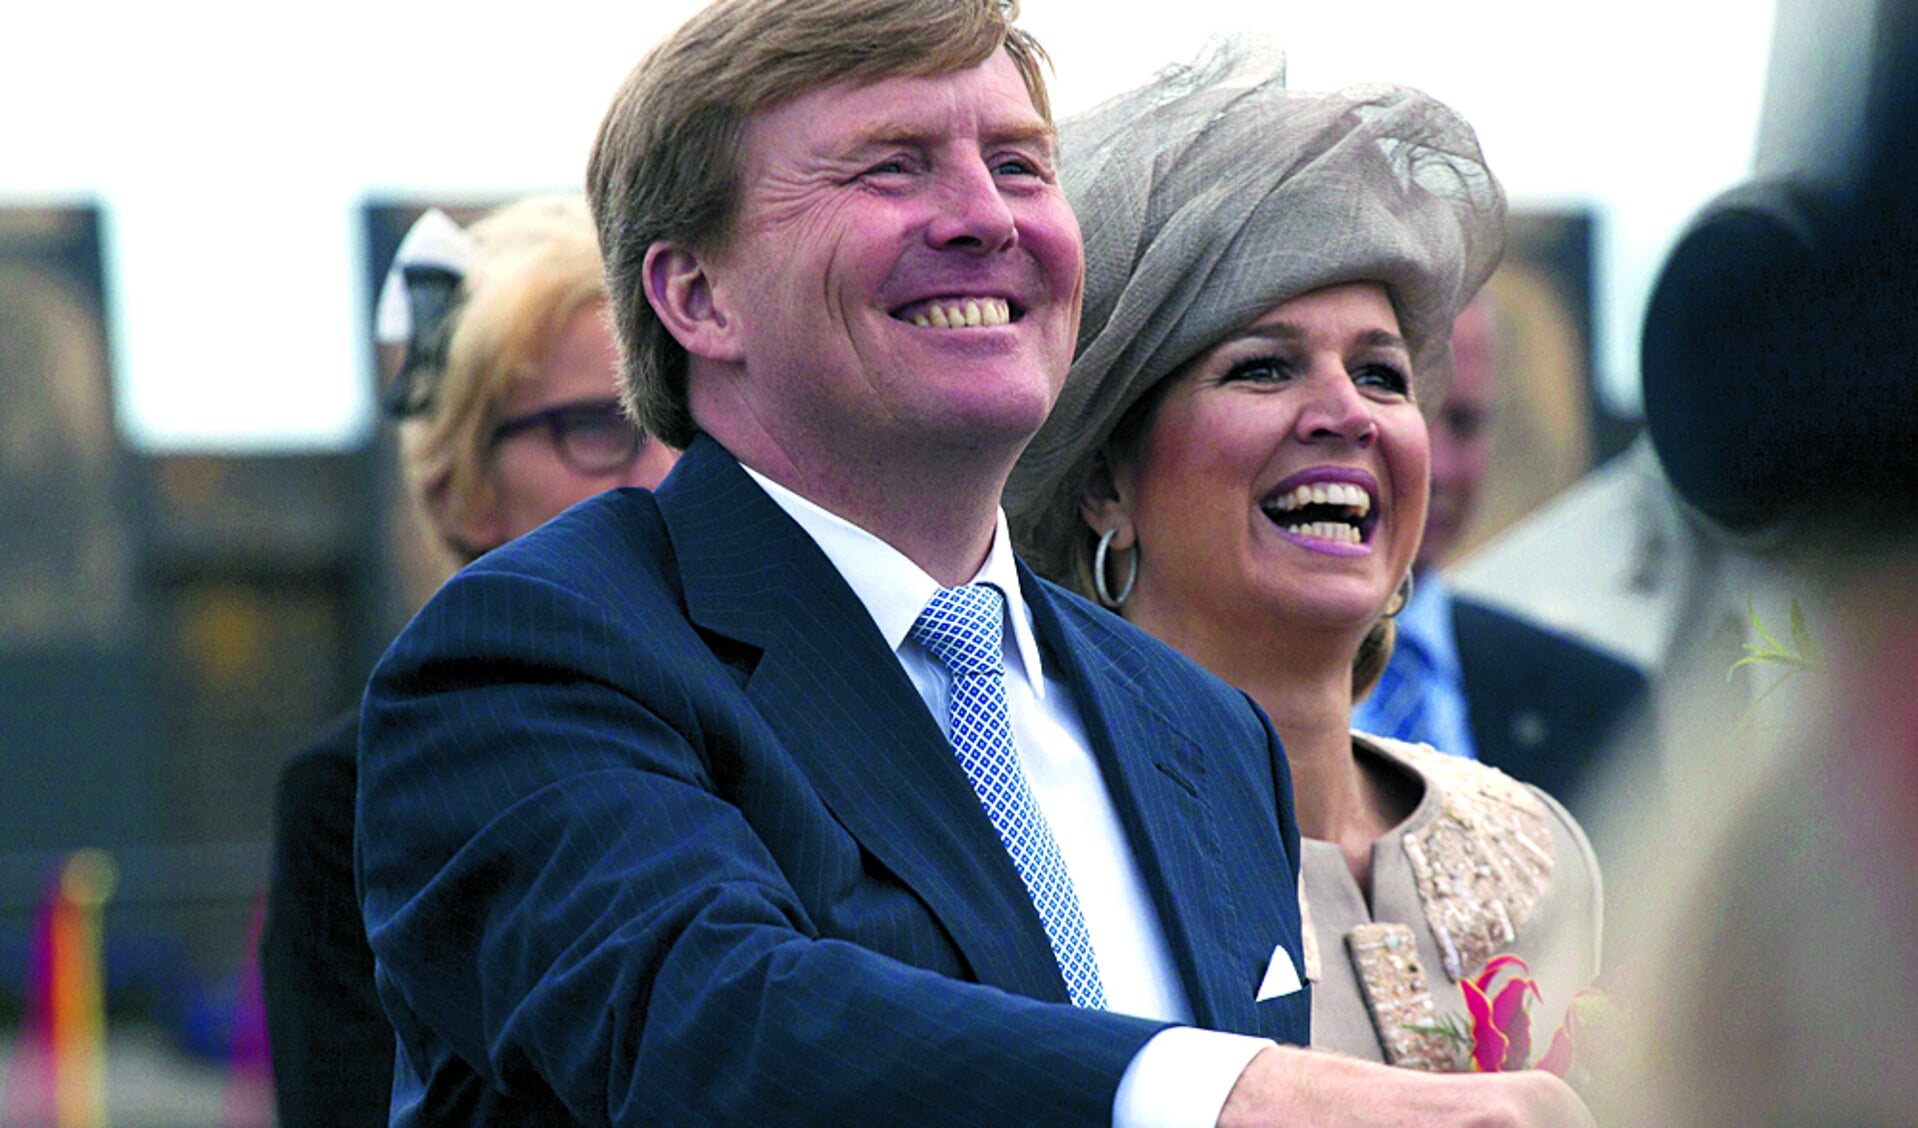 De Koning en Koningin brengen een bezoek in West-Friesland. Medemblik is één van de plaatsen die wordt bezocht. (Foto: Shutterstock)